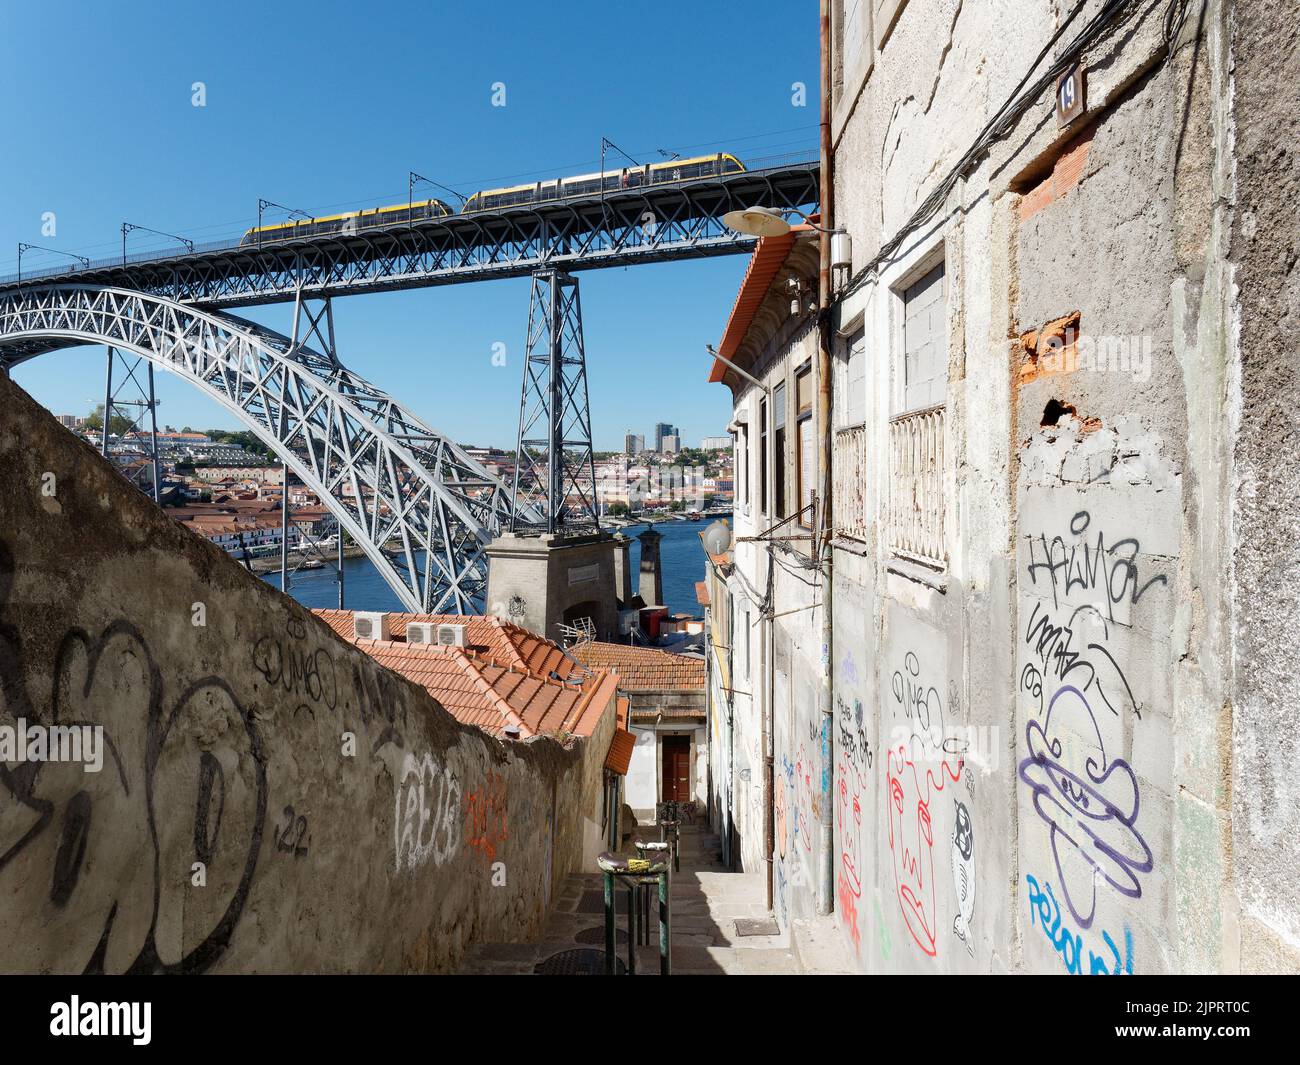 Passerelle à gradins menant à la rivière Duoro. Métro sur le pont Luis I qui s'élève au-dessus et les murs sont couverts de Graffiti. Porto, Portugal. Banque D'Images